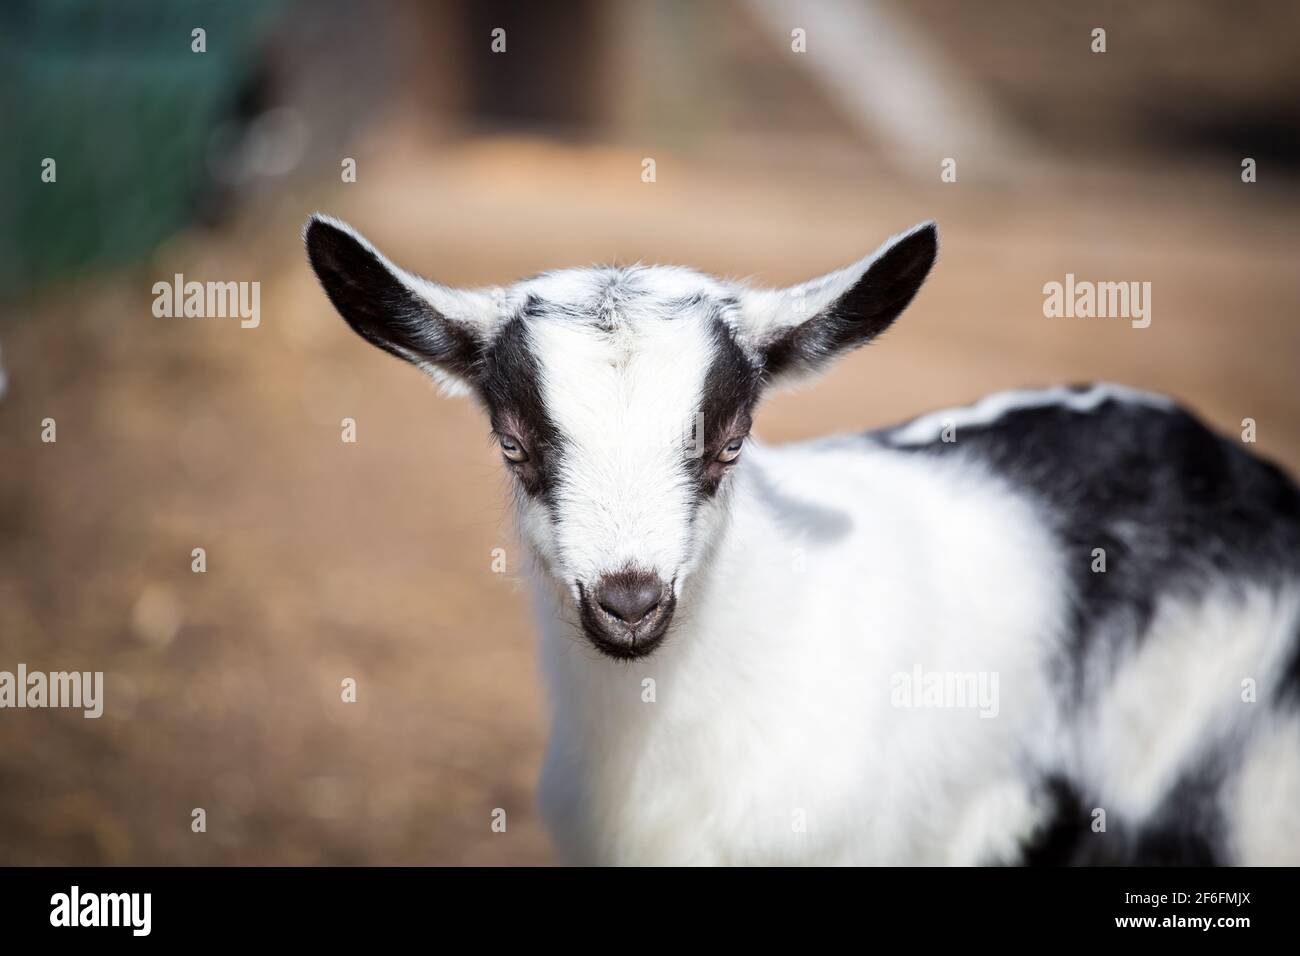 Chèvre gamin de la race 'Pfauenziege' (chèvre de paon), espèce de chèvre autrichienne menacée Banque D'Images